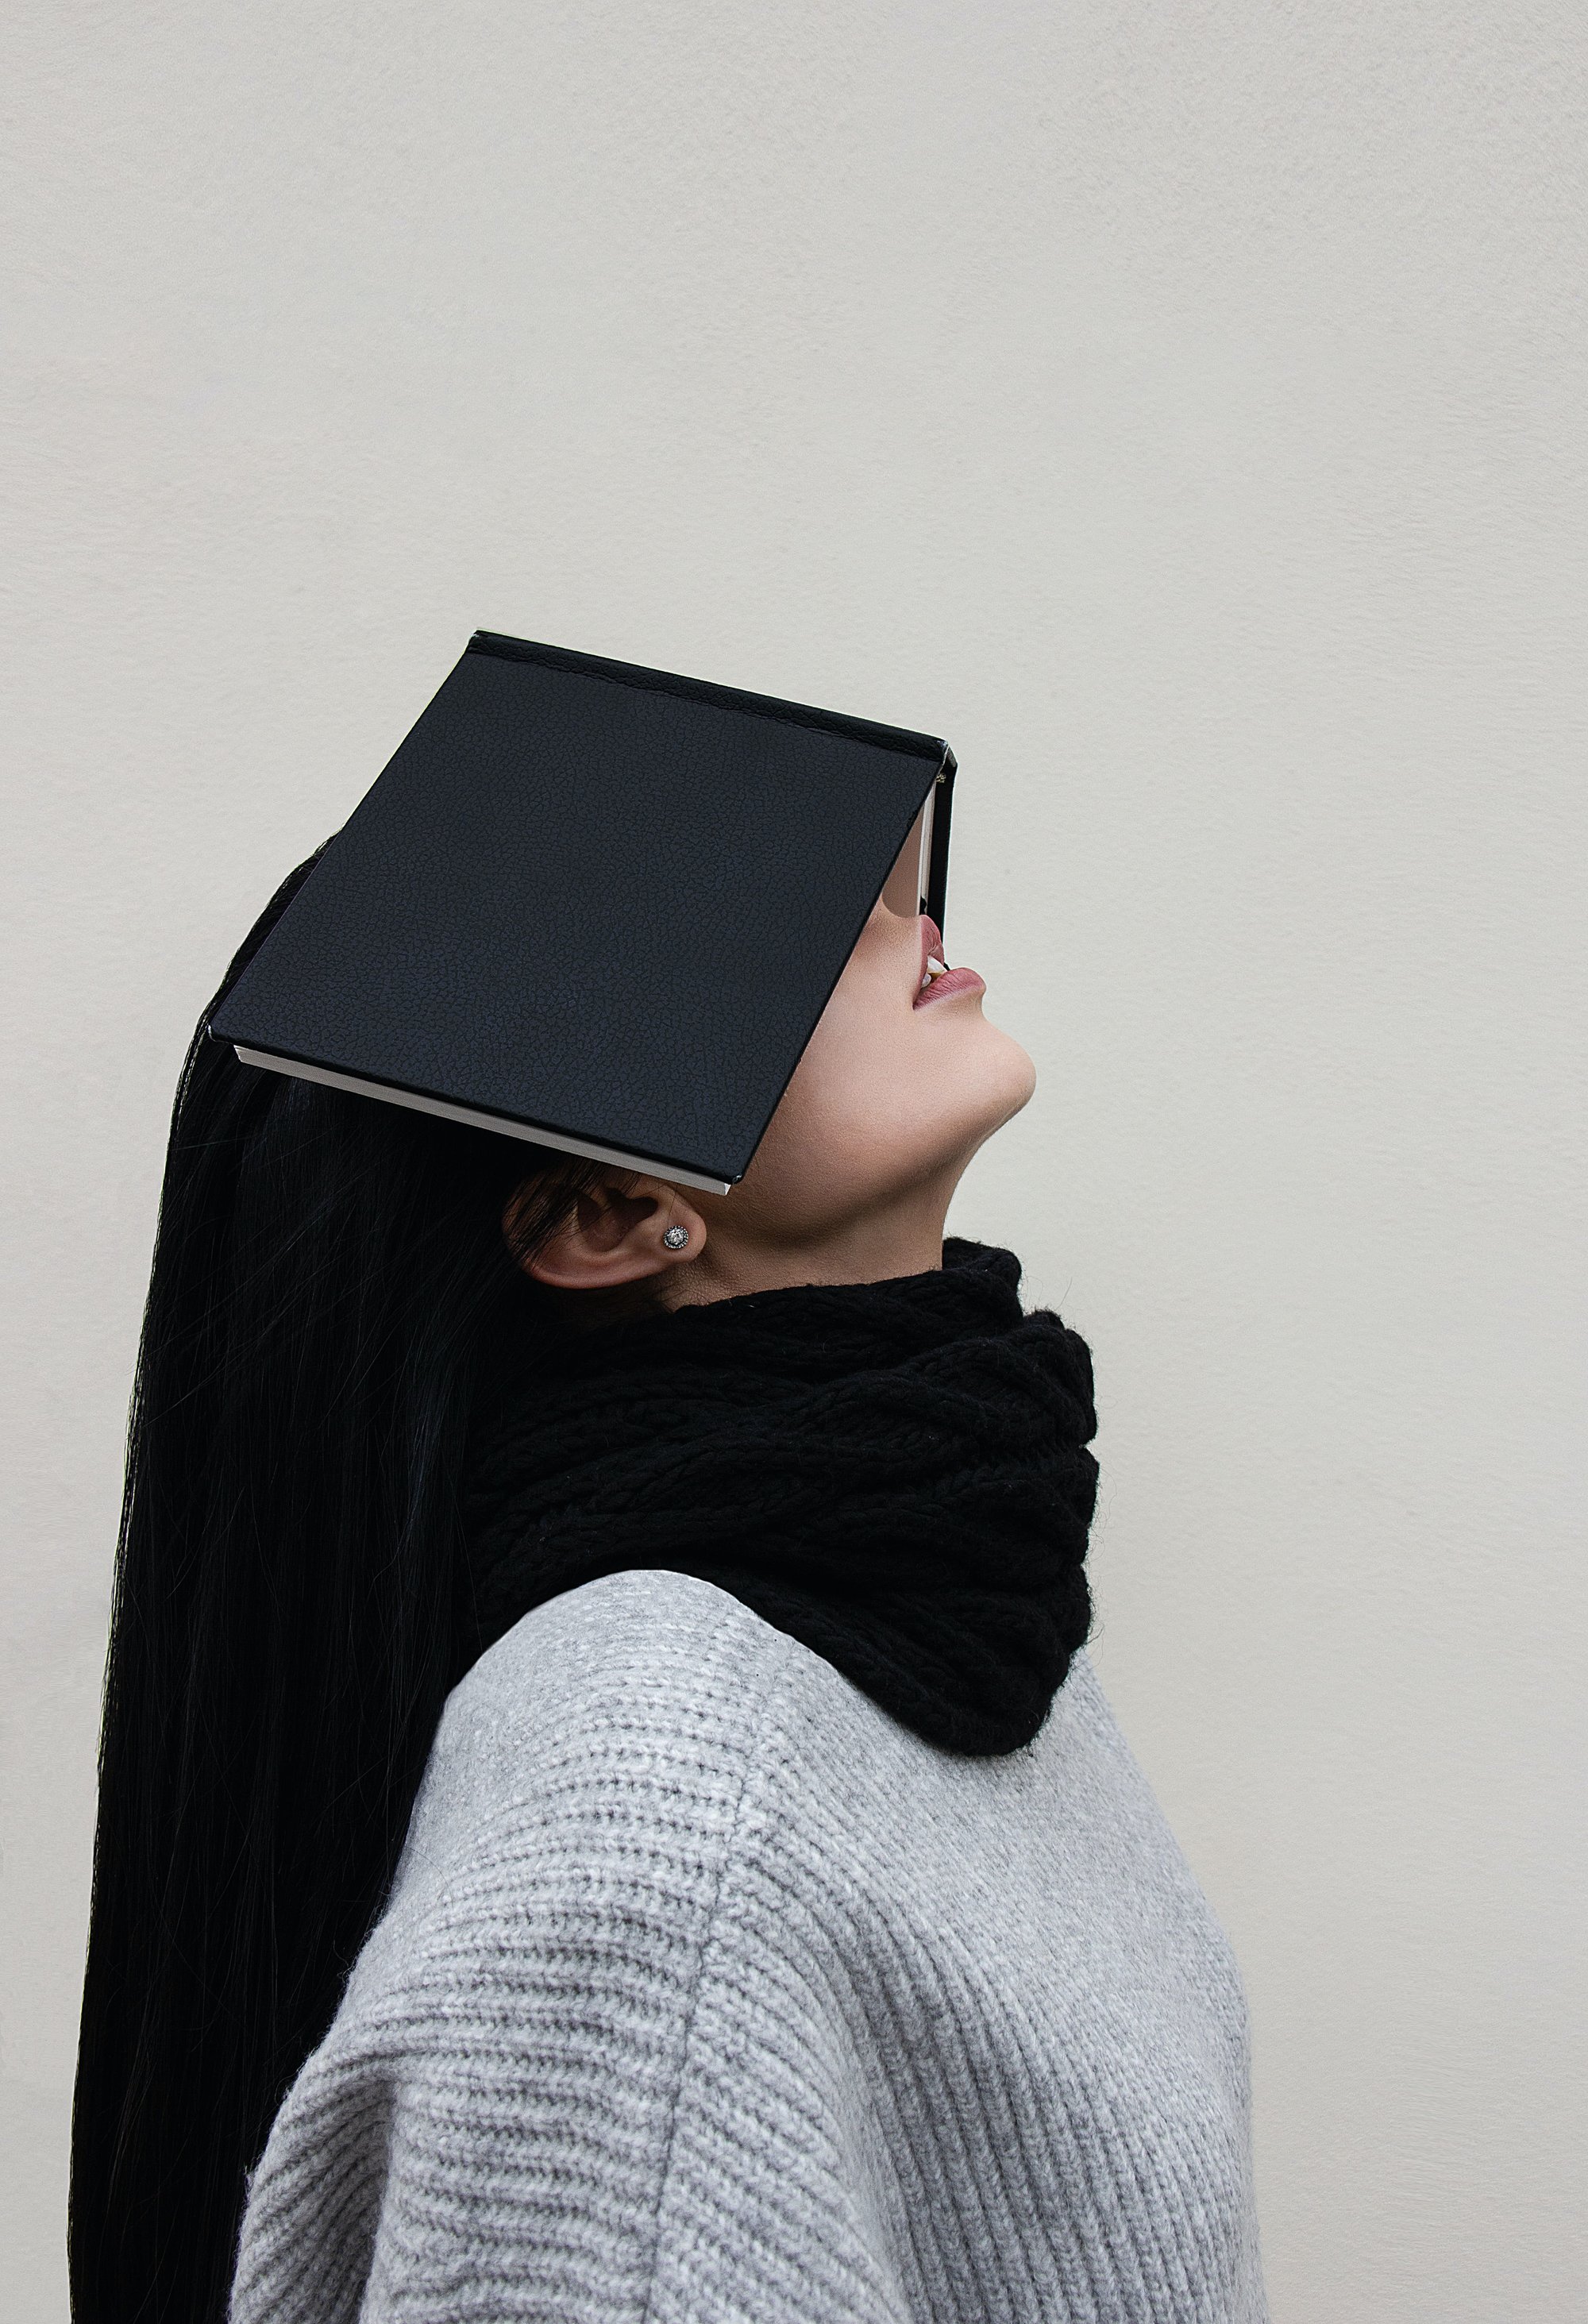 Frau mit grauem Pulli, die ihre Augen mit einem schwarzen Buch bedeckt
Foto: Valerie Lendel